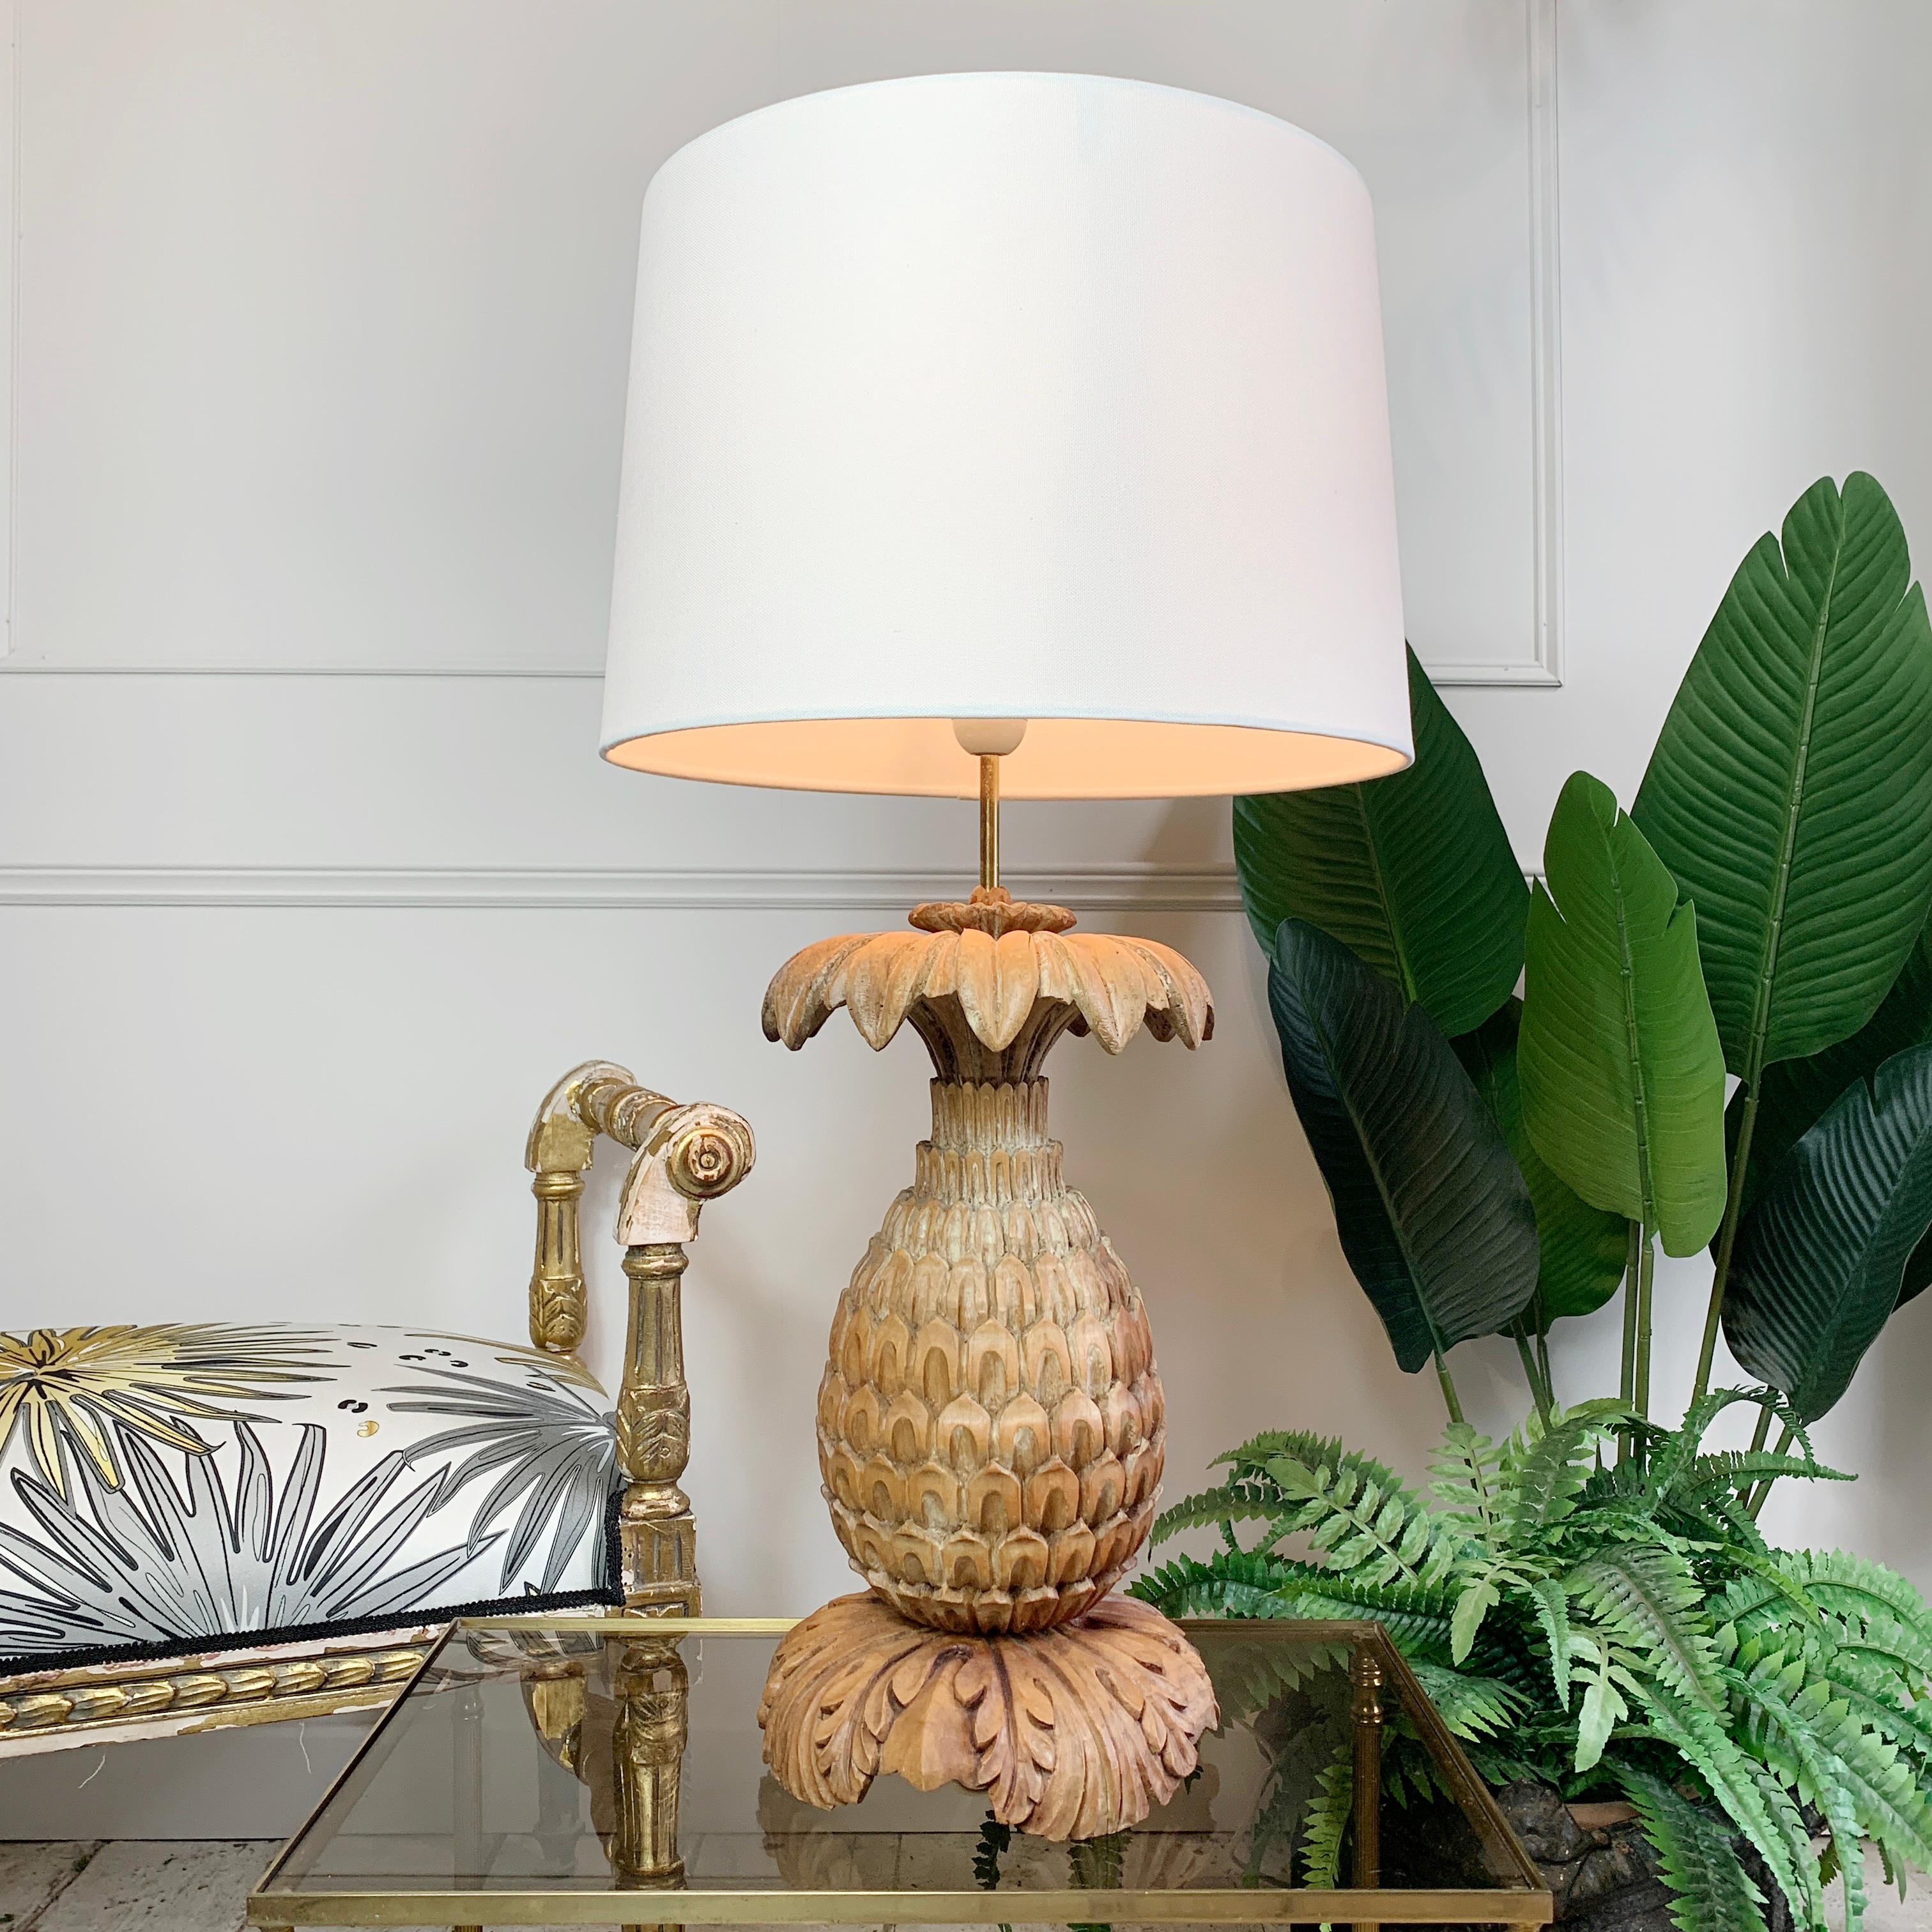 Eine prächtige Ananas-Tischlampe aus den 1930er Jahren von Maison Jansen. Aus einem einzigen Stück Holz geschnitzt, sind die Details und das Design dieses seltenen Stücks wirklich exquisit.

Es gibt Anzeichen von Verschleiß und Patina, die von